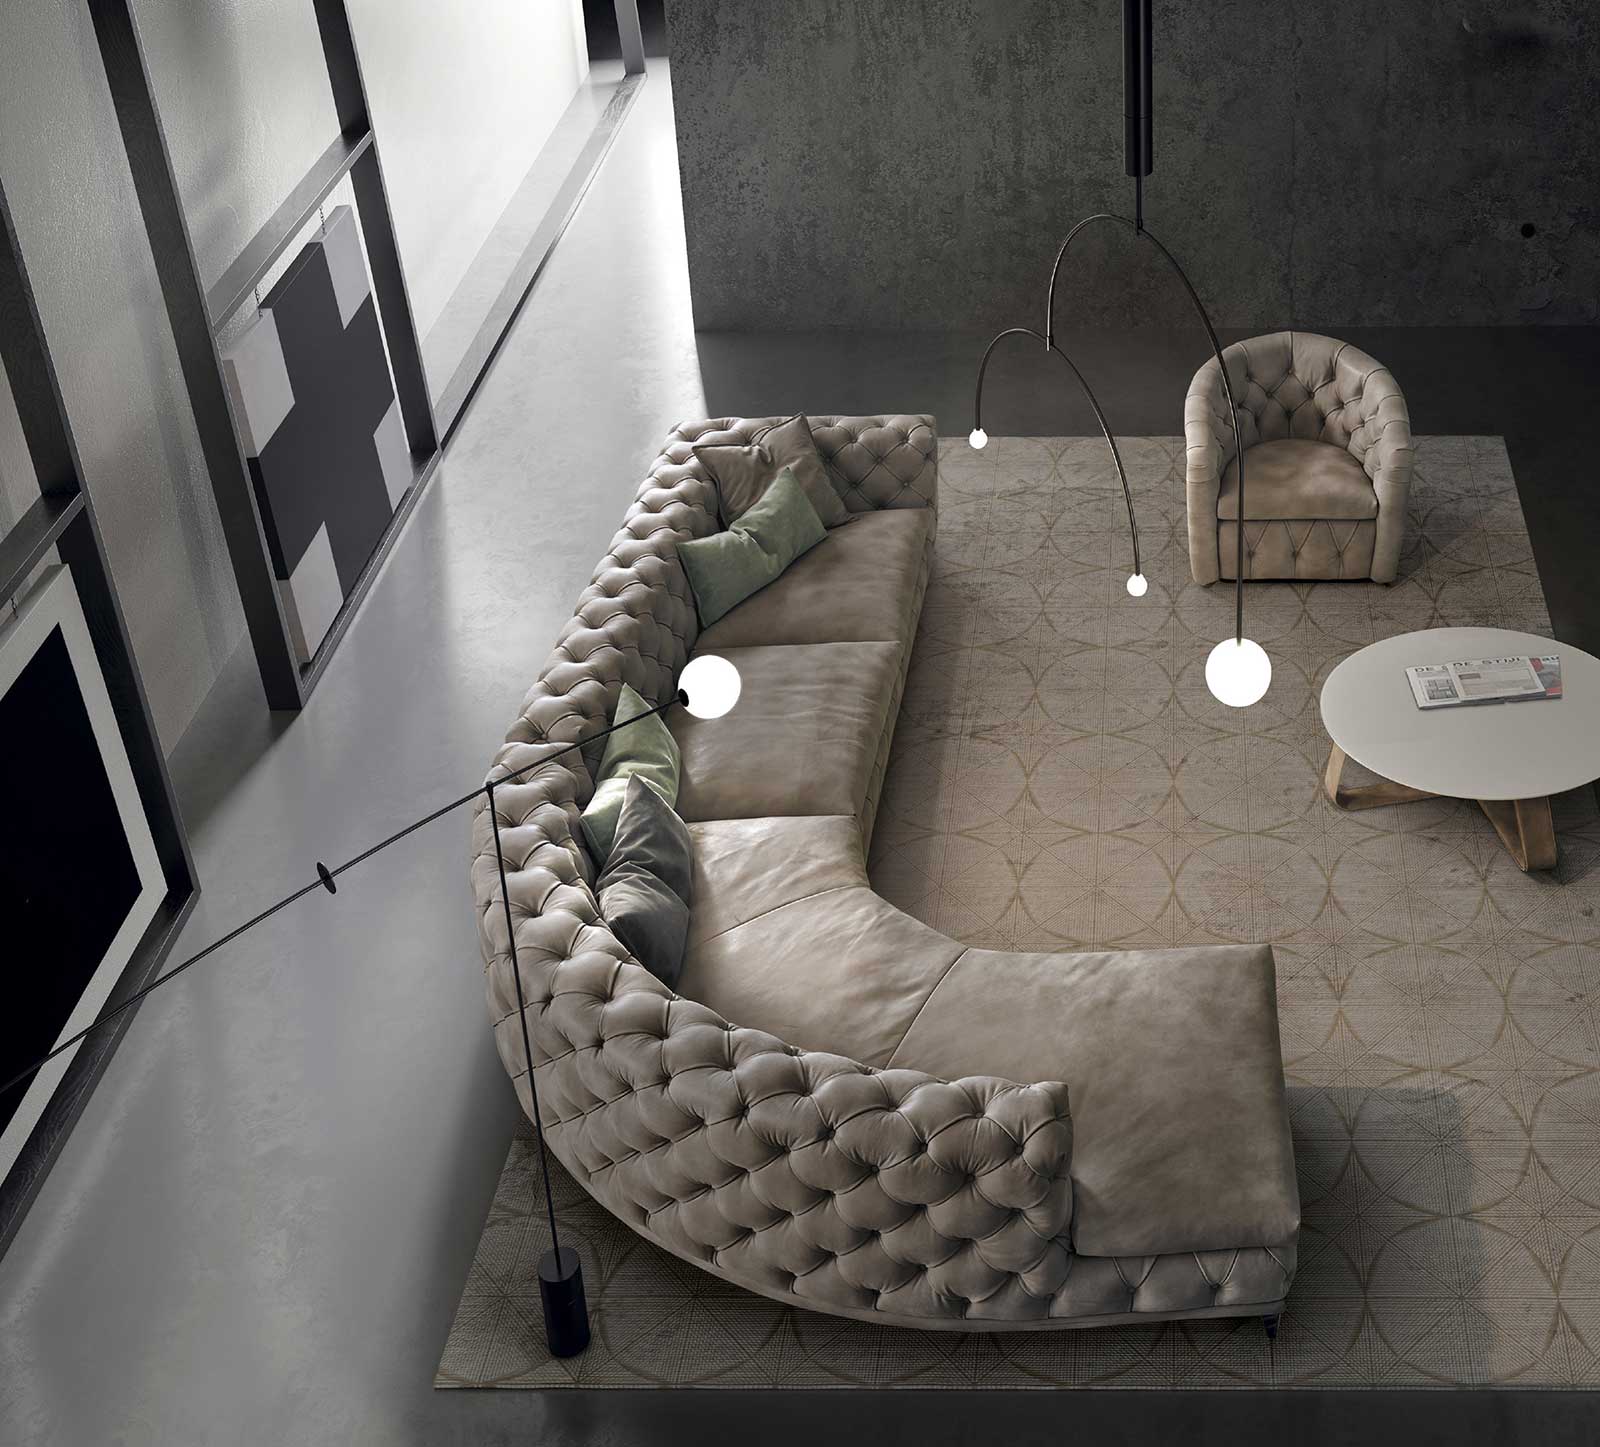 Aston canapé capitonné en cuir pleine fleur artisanal made in Italy. Vente en ligne de meubles de luxe design pour le salon avec livraison gratuite.